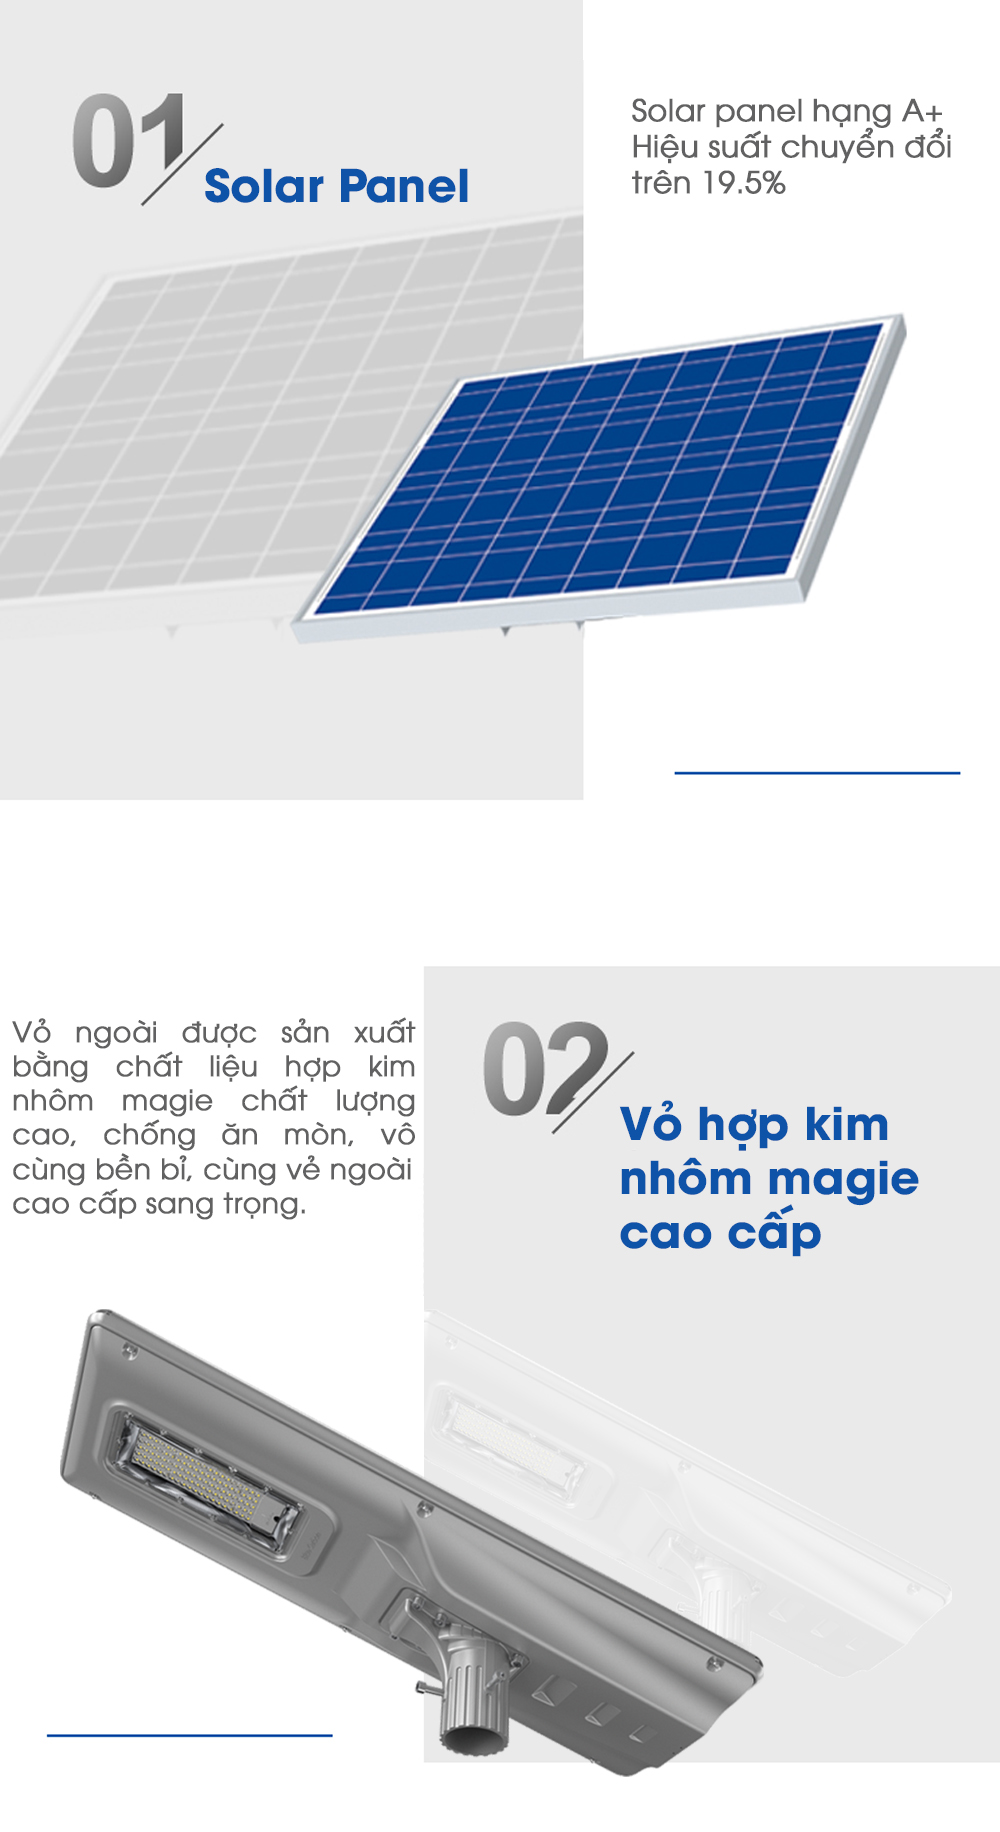 Đèn Đường Năng Lượng Mặt Trời 80W Blue Carbon BCT-OLF 4 ưu điểm đáng giá